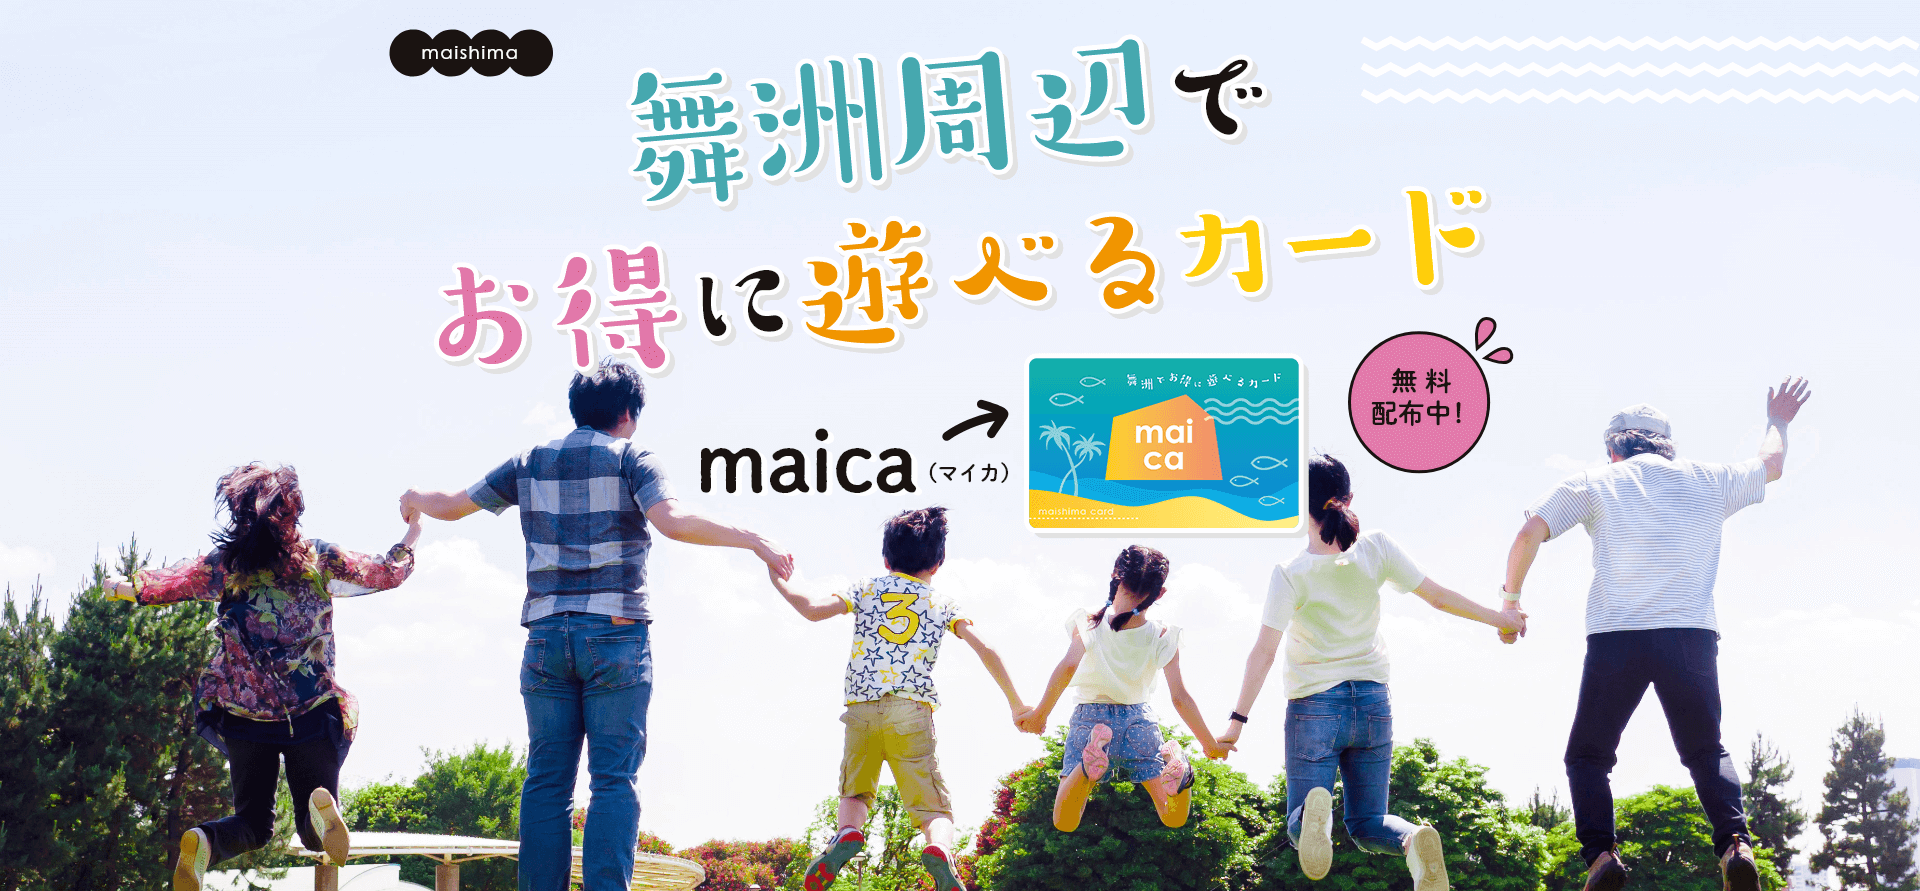 【maica】舞洲でお得に遊べるカードのご紹介